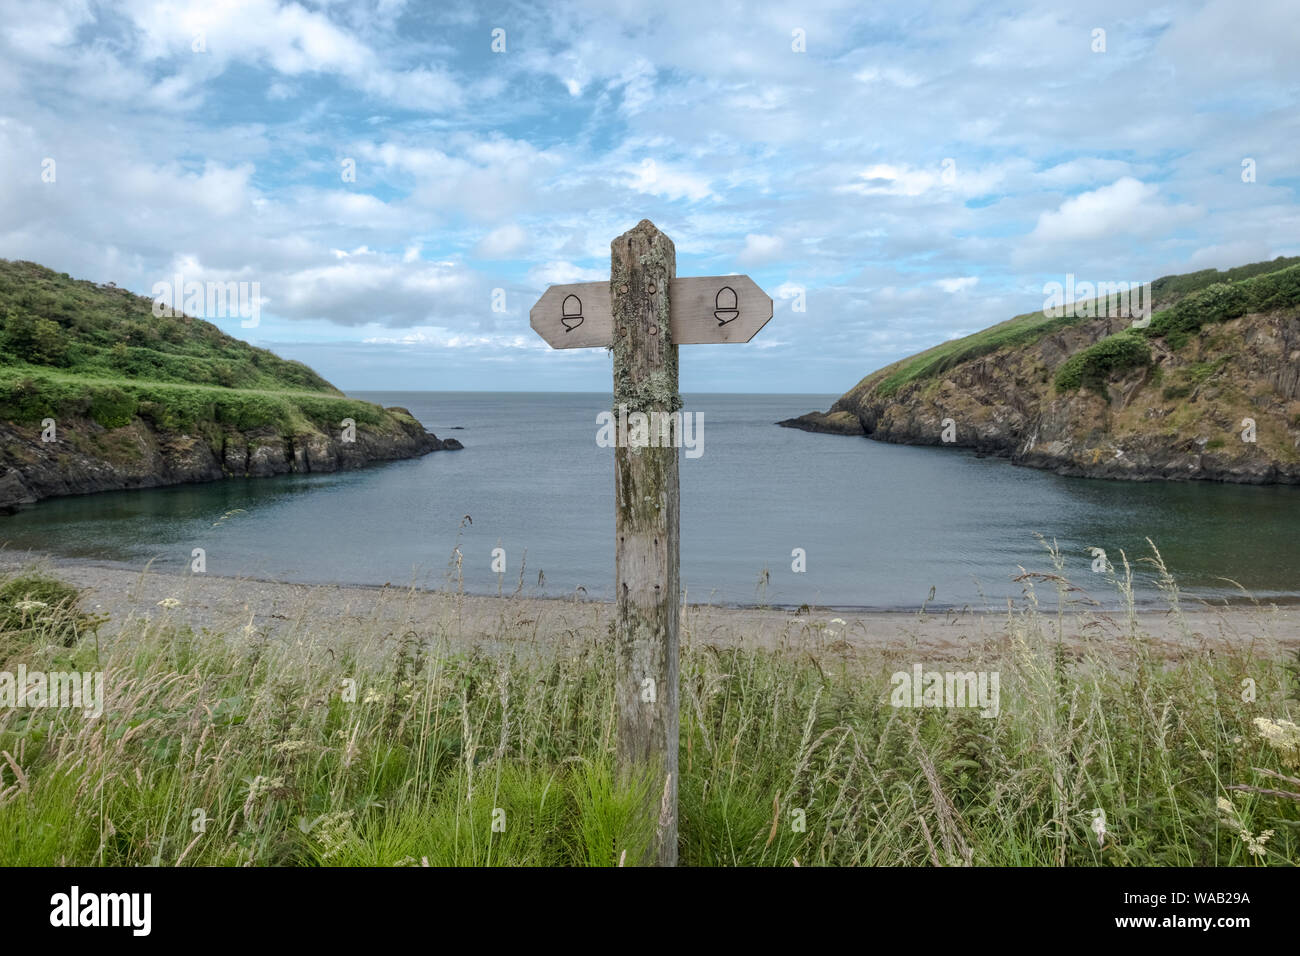 El símbolo de bellota es el indicador nacional de rutas de senderismo en Inglaterra y Gales. Este es uno de los signos a lo largo de la ruta de la costa de Pembrokeshire en Gales. Foto de stock